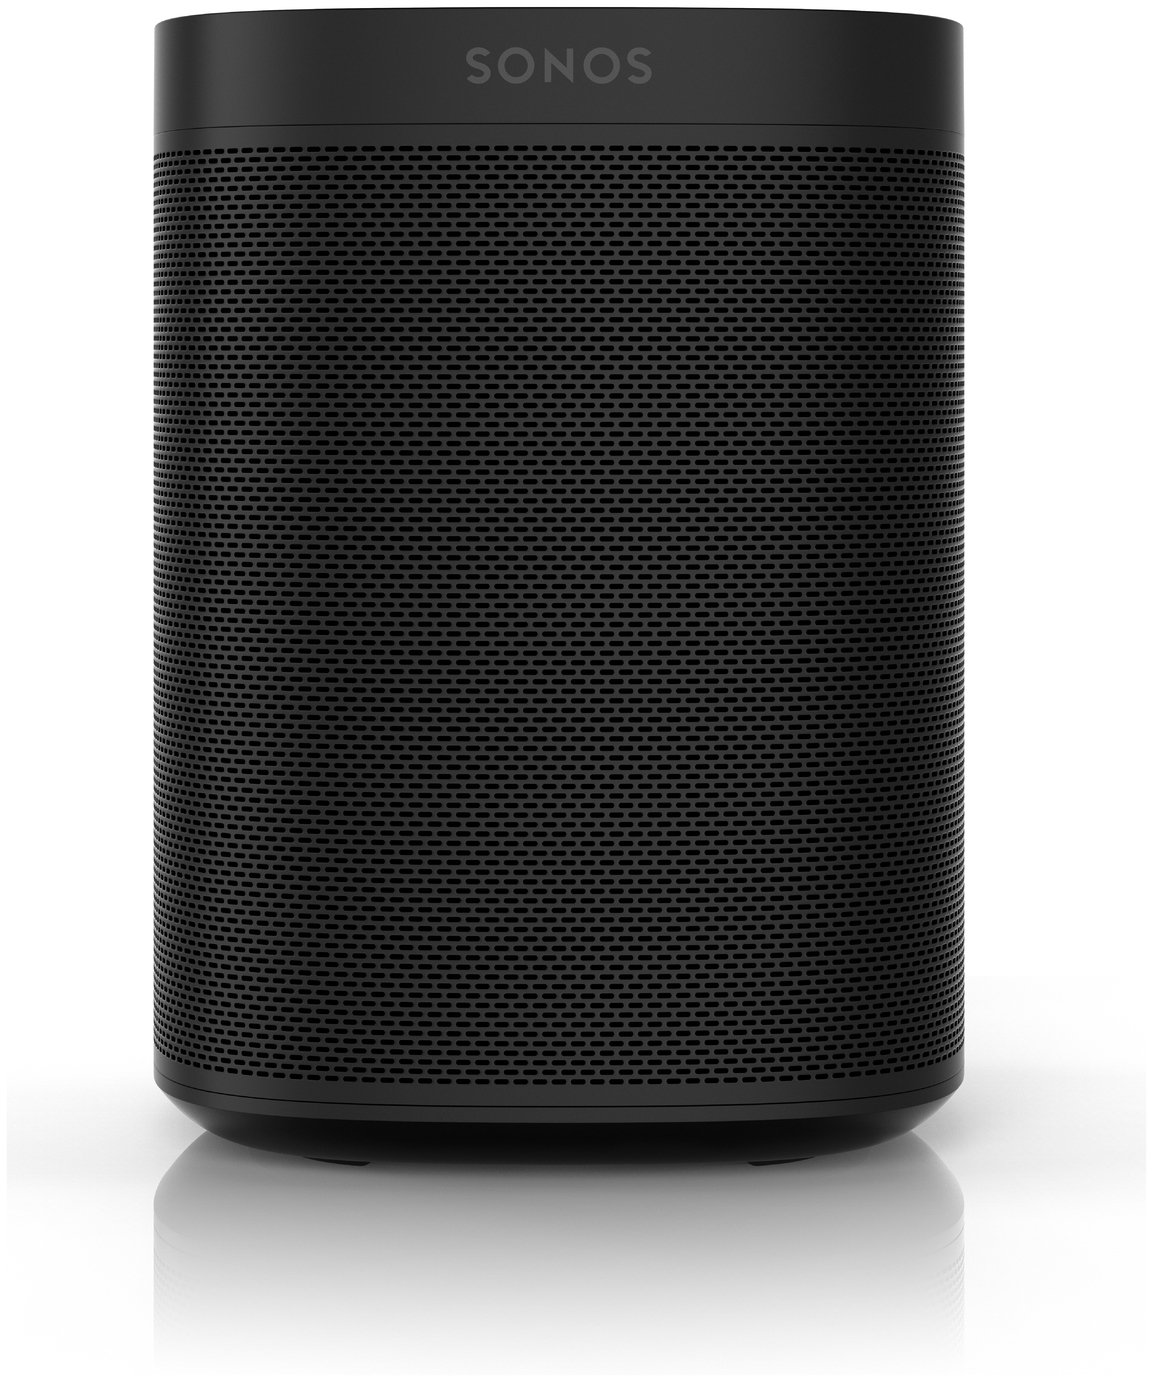 Sonos One 2nd Gen Wireless Smart Speaker Review